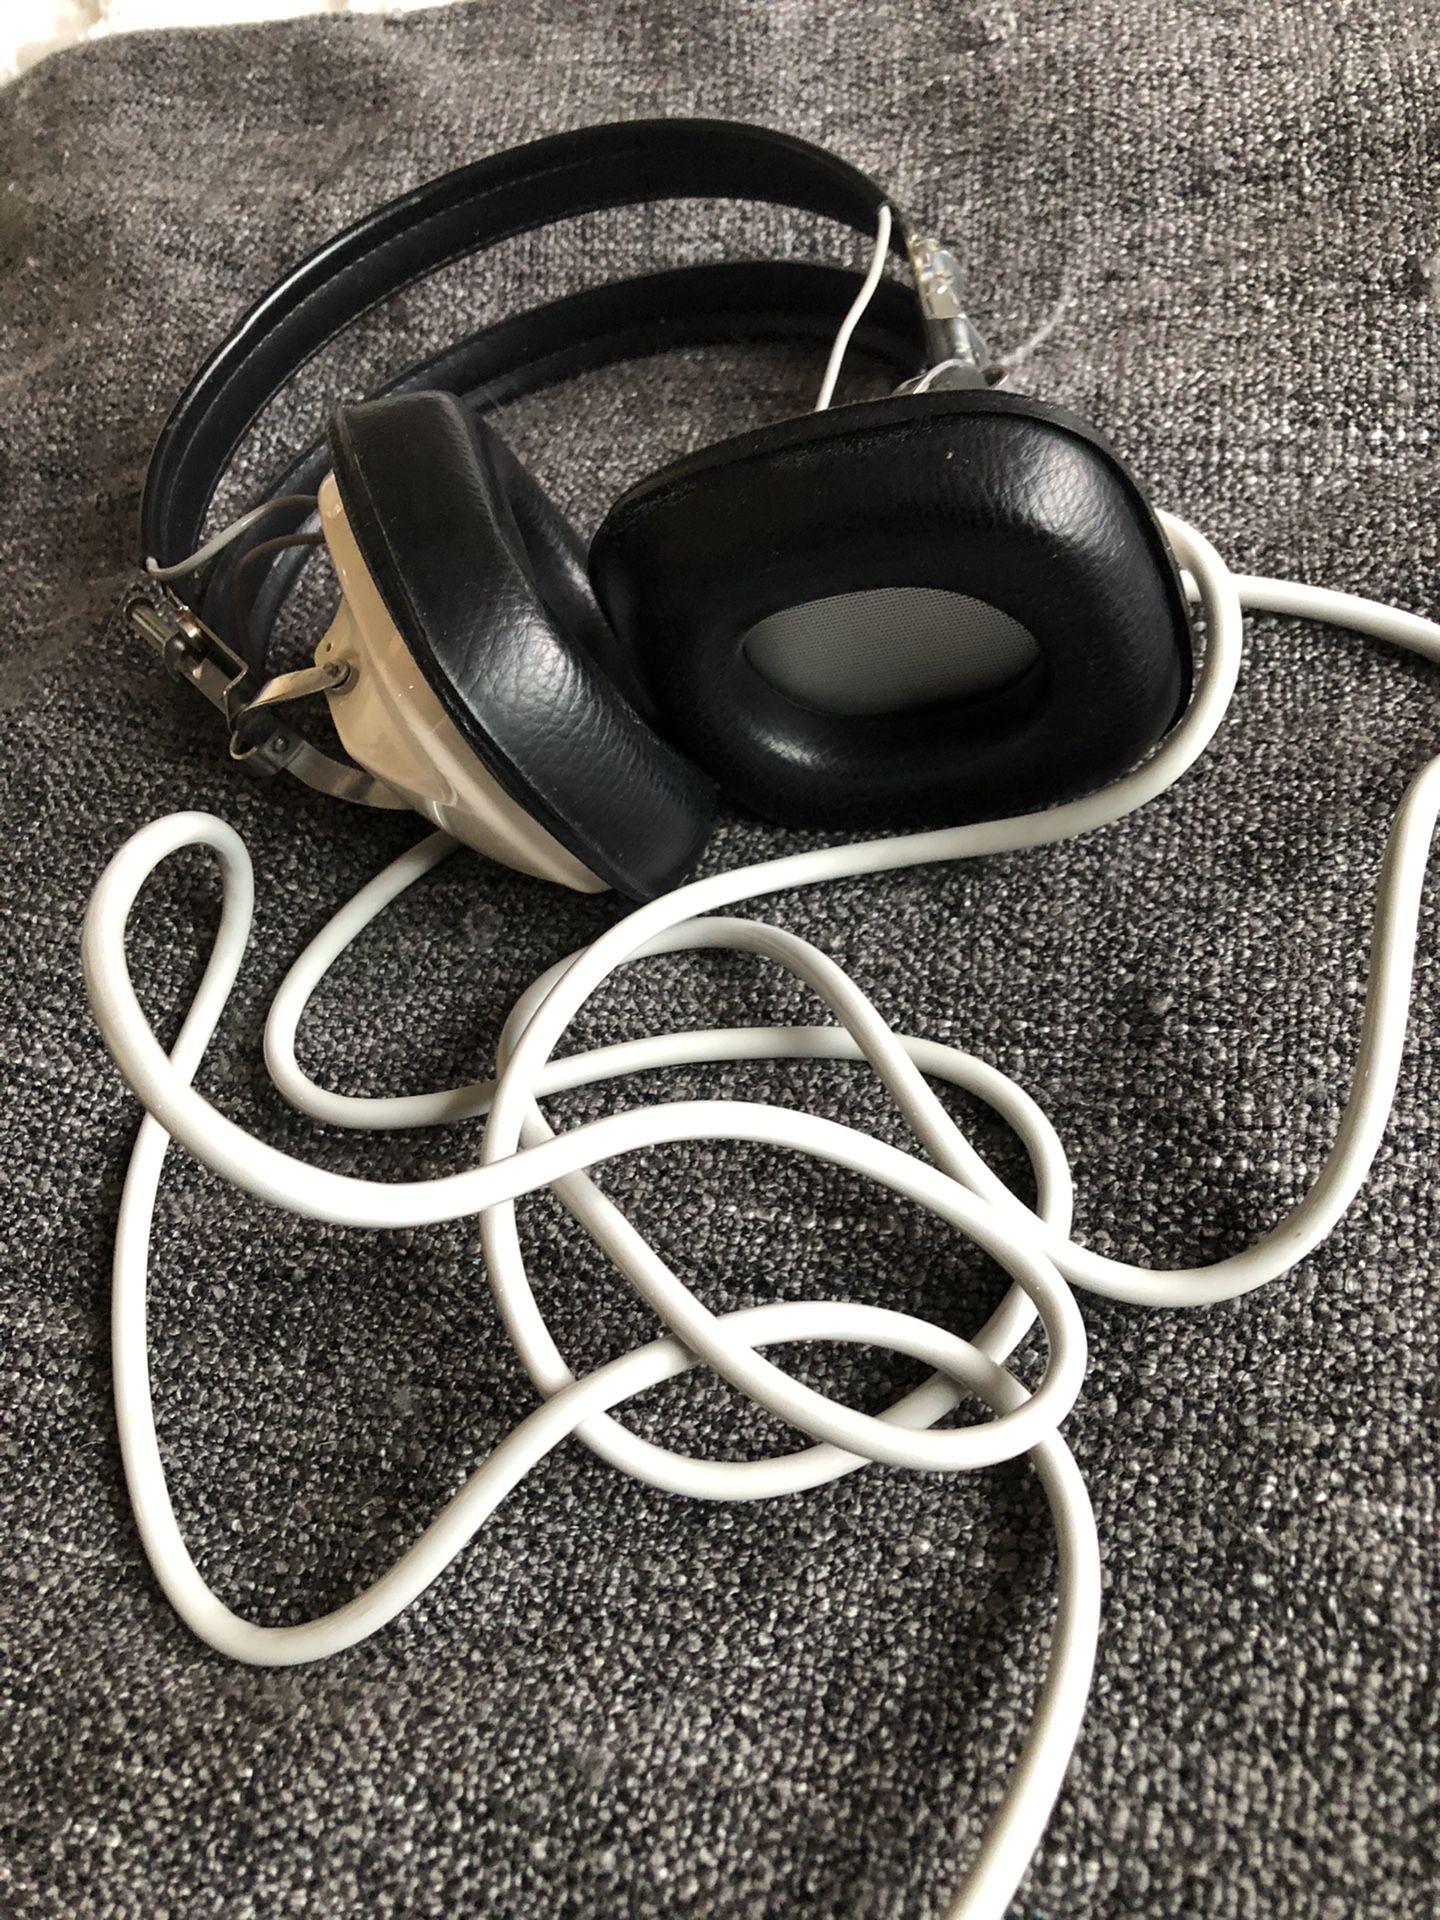 Vintage Sansui Model ss-2 headphones